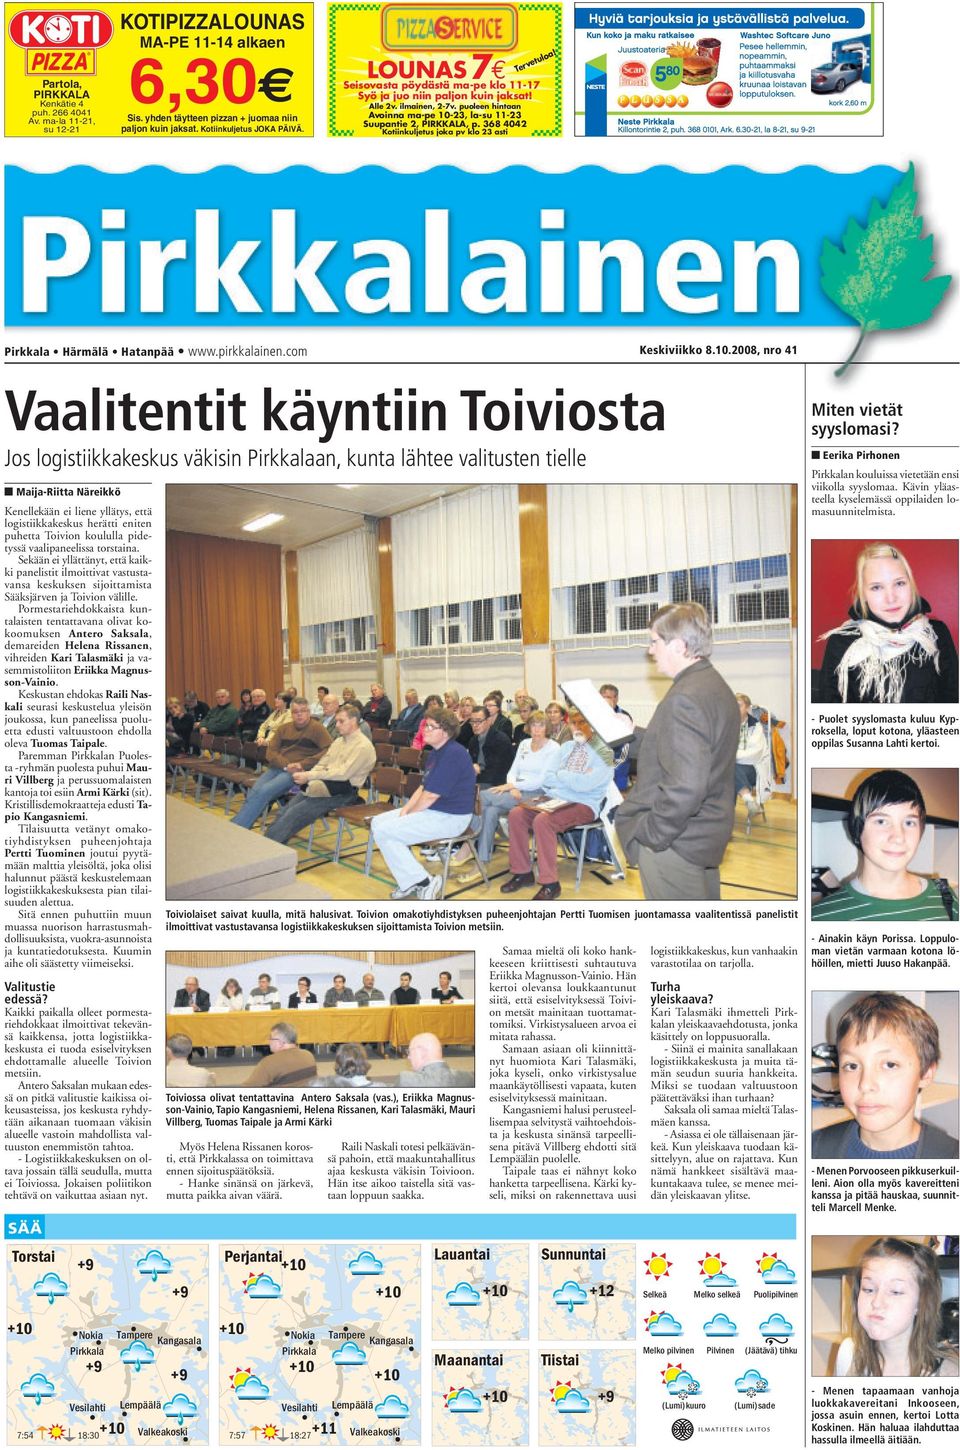 368 4042 Kotiinkuljetus joka pv klo 23 asti Tervetuloa! Härmälä Hatanpää www.pirkkalainen.com Keskiviikko 8.10.